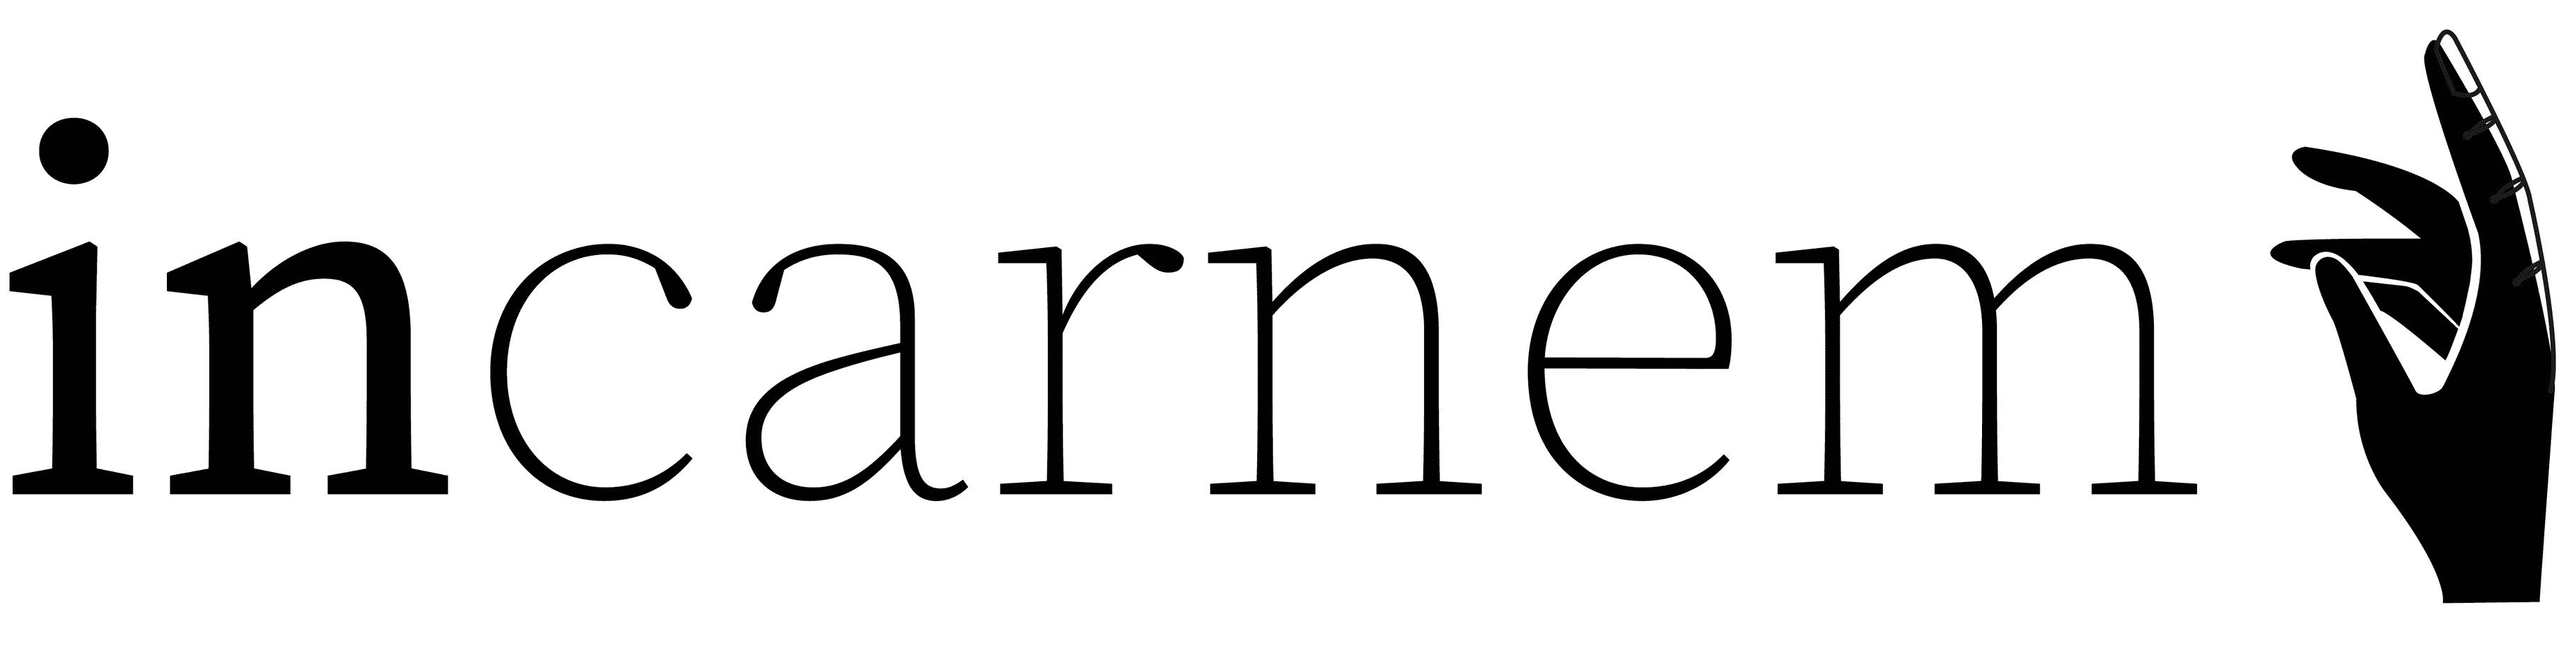 Incarnem Logo representation in black